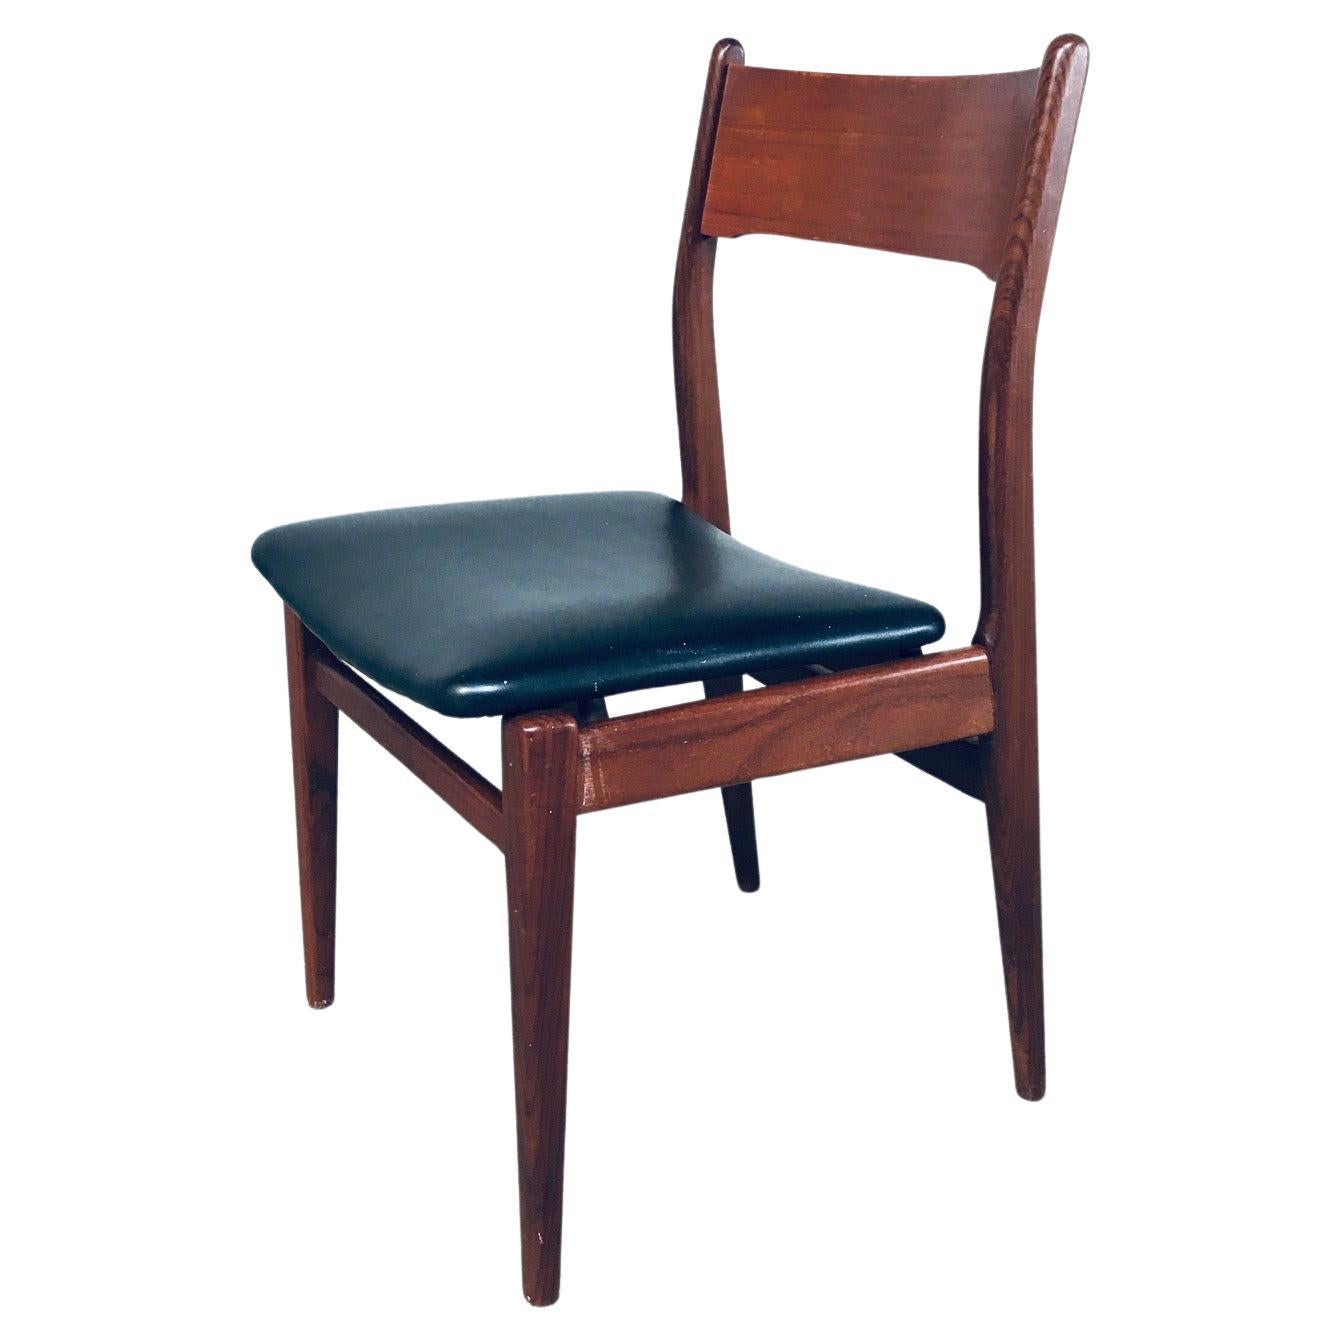 Mid-Century Modern Scandinavian Design Teak Dining Chair Set